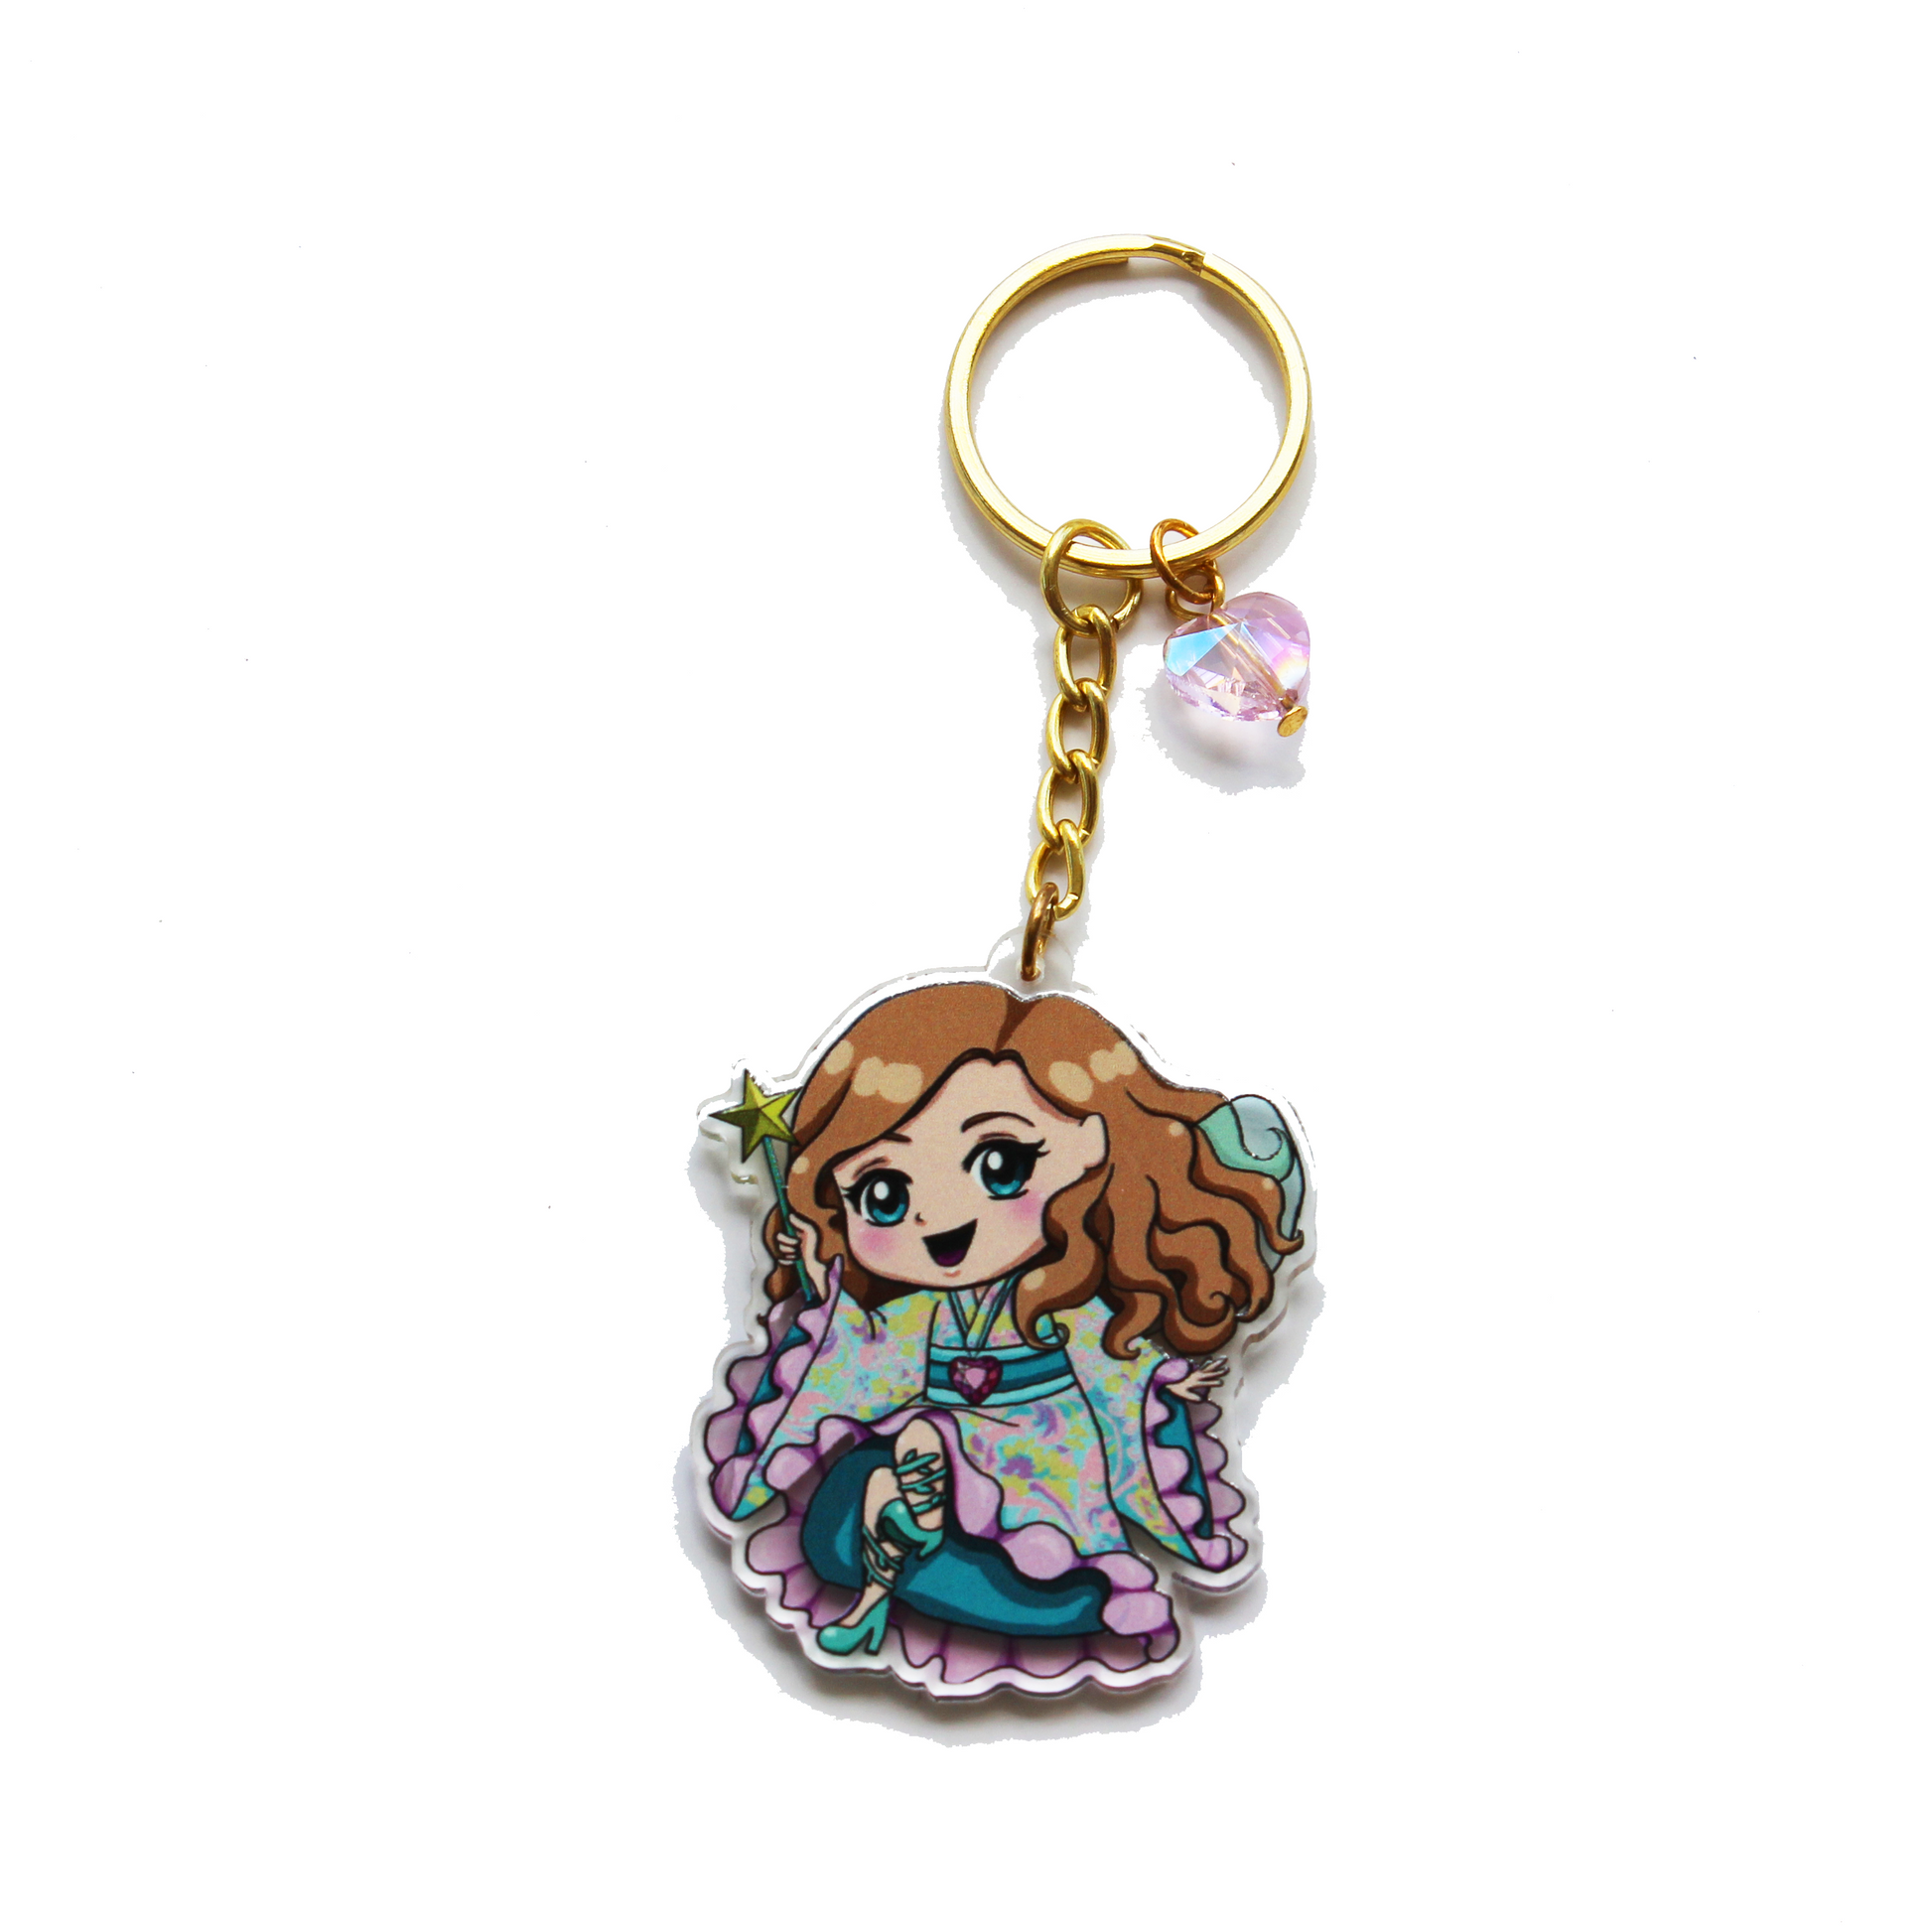 Doll Fairy Chibi Acrylic Charm Key Chain with Crystal Heart - The Doll Fairy